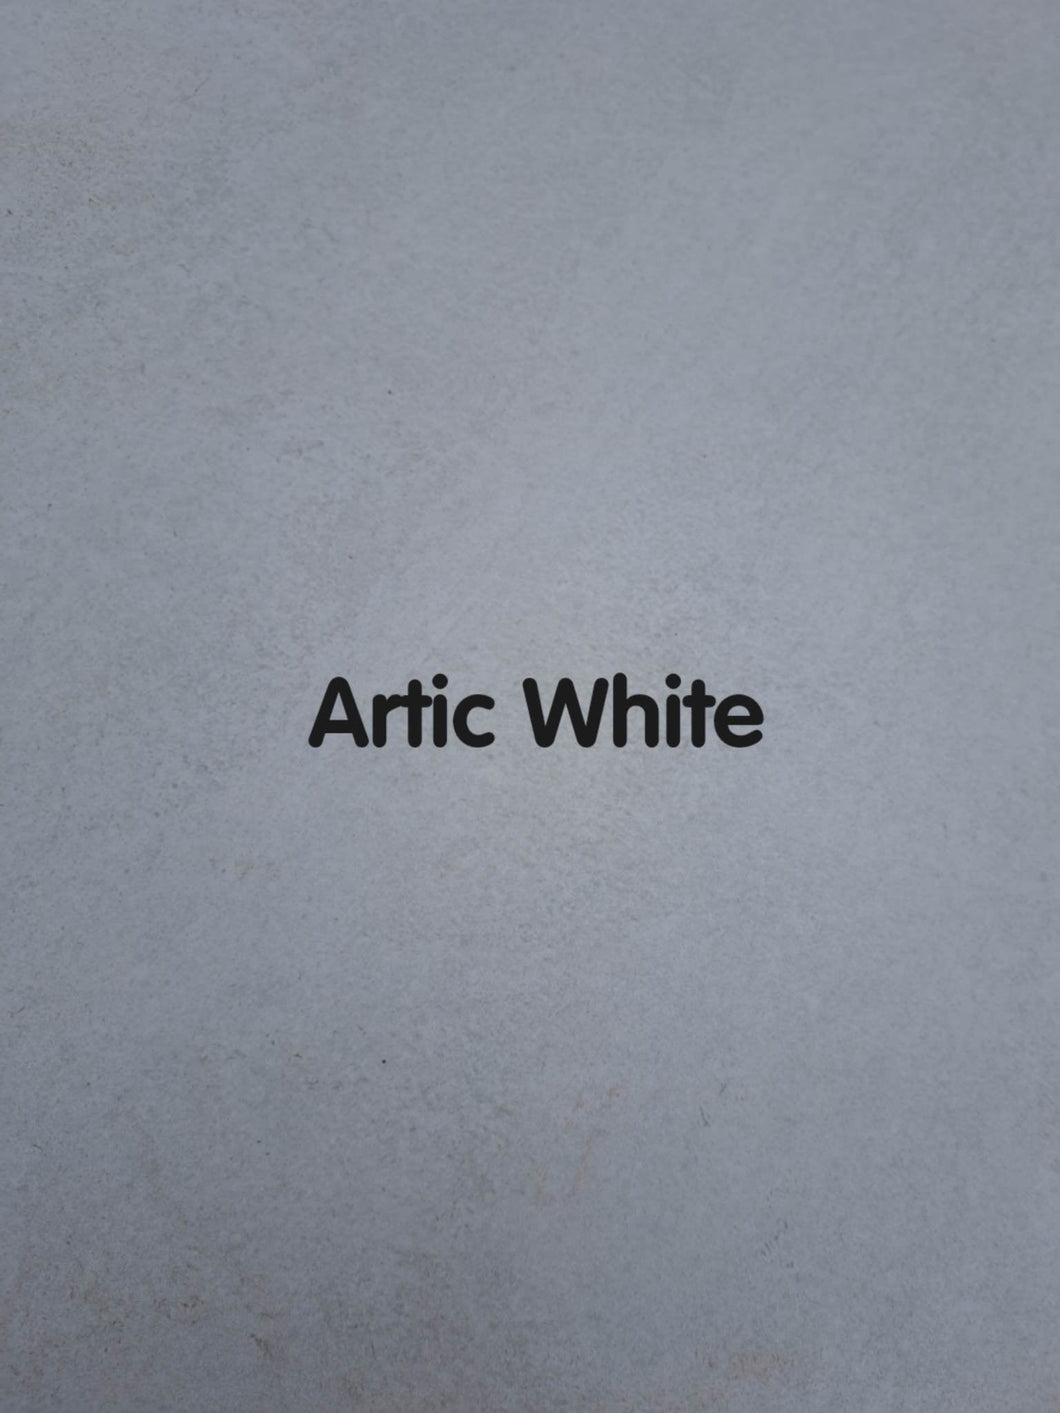 Artic White.jpg